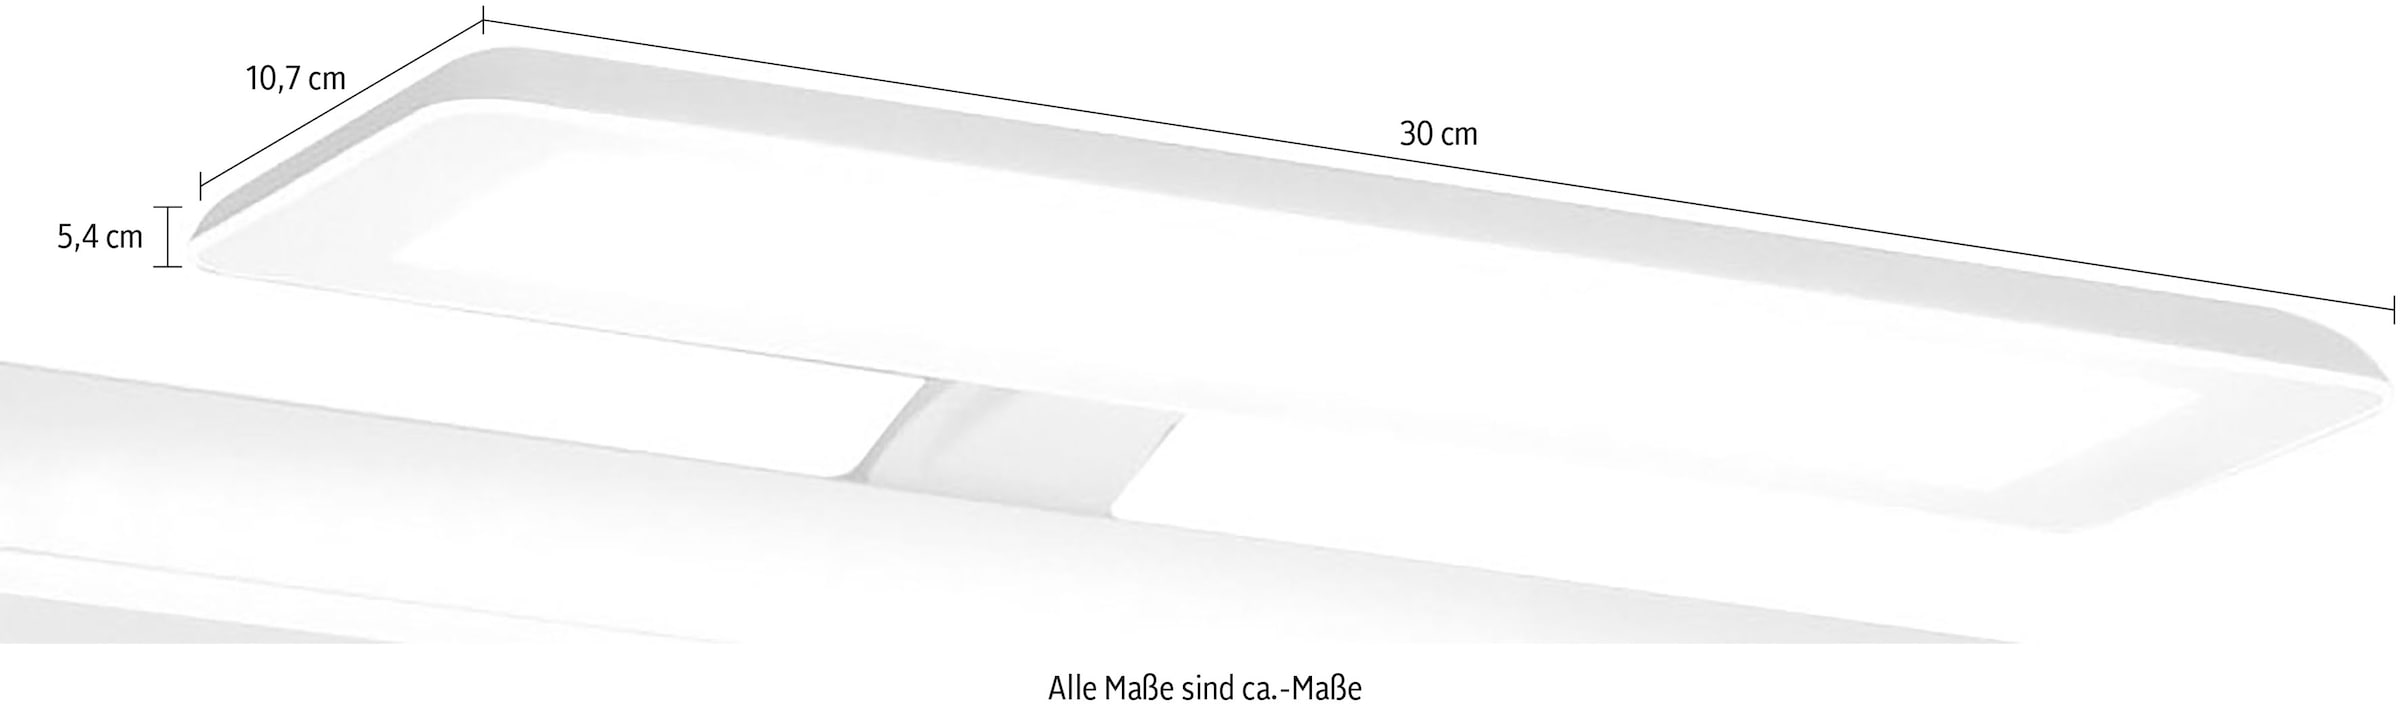 Saphir LED Spiegelleuchte »Quickset LED-Aufsatzleuchte für Spiegel o. Spiegelschrank in Weiß«, Badlampe 30 cm breit, Lichtfarbe kaltweiß, Kunststoff, 435 LM, 230V